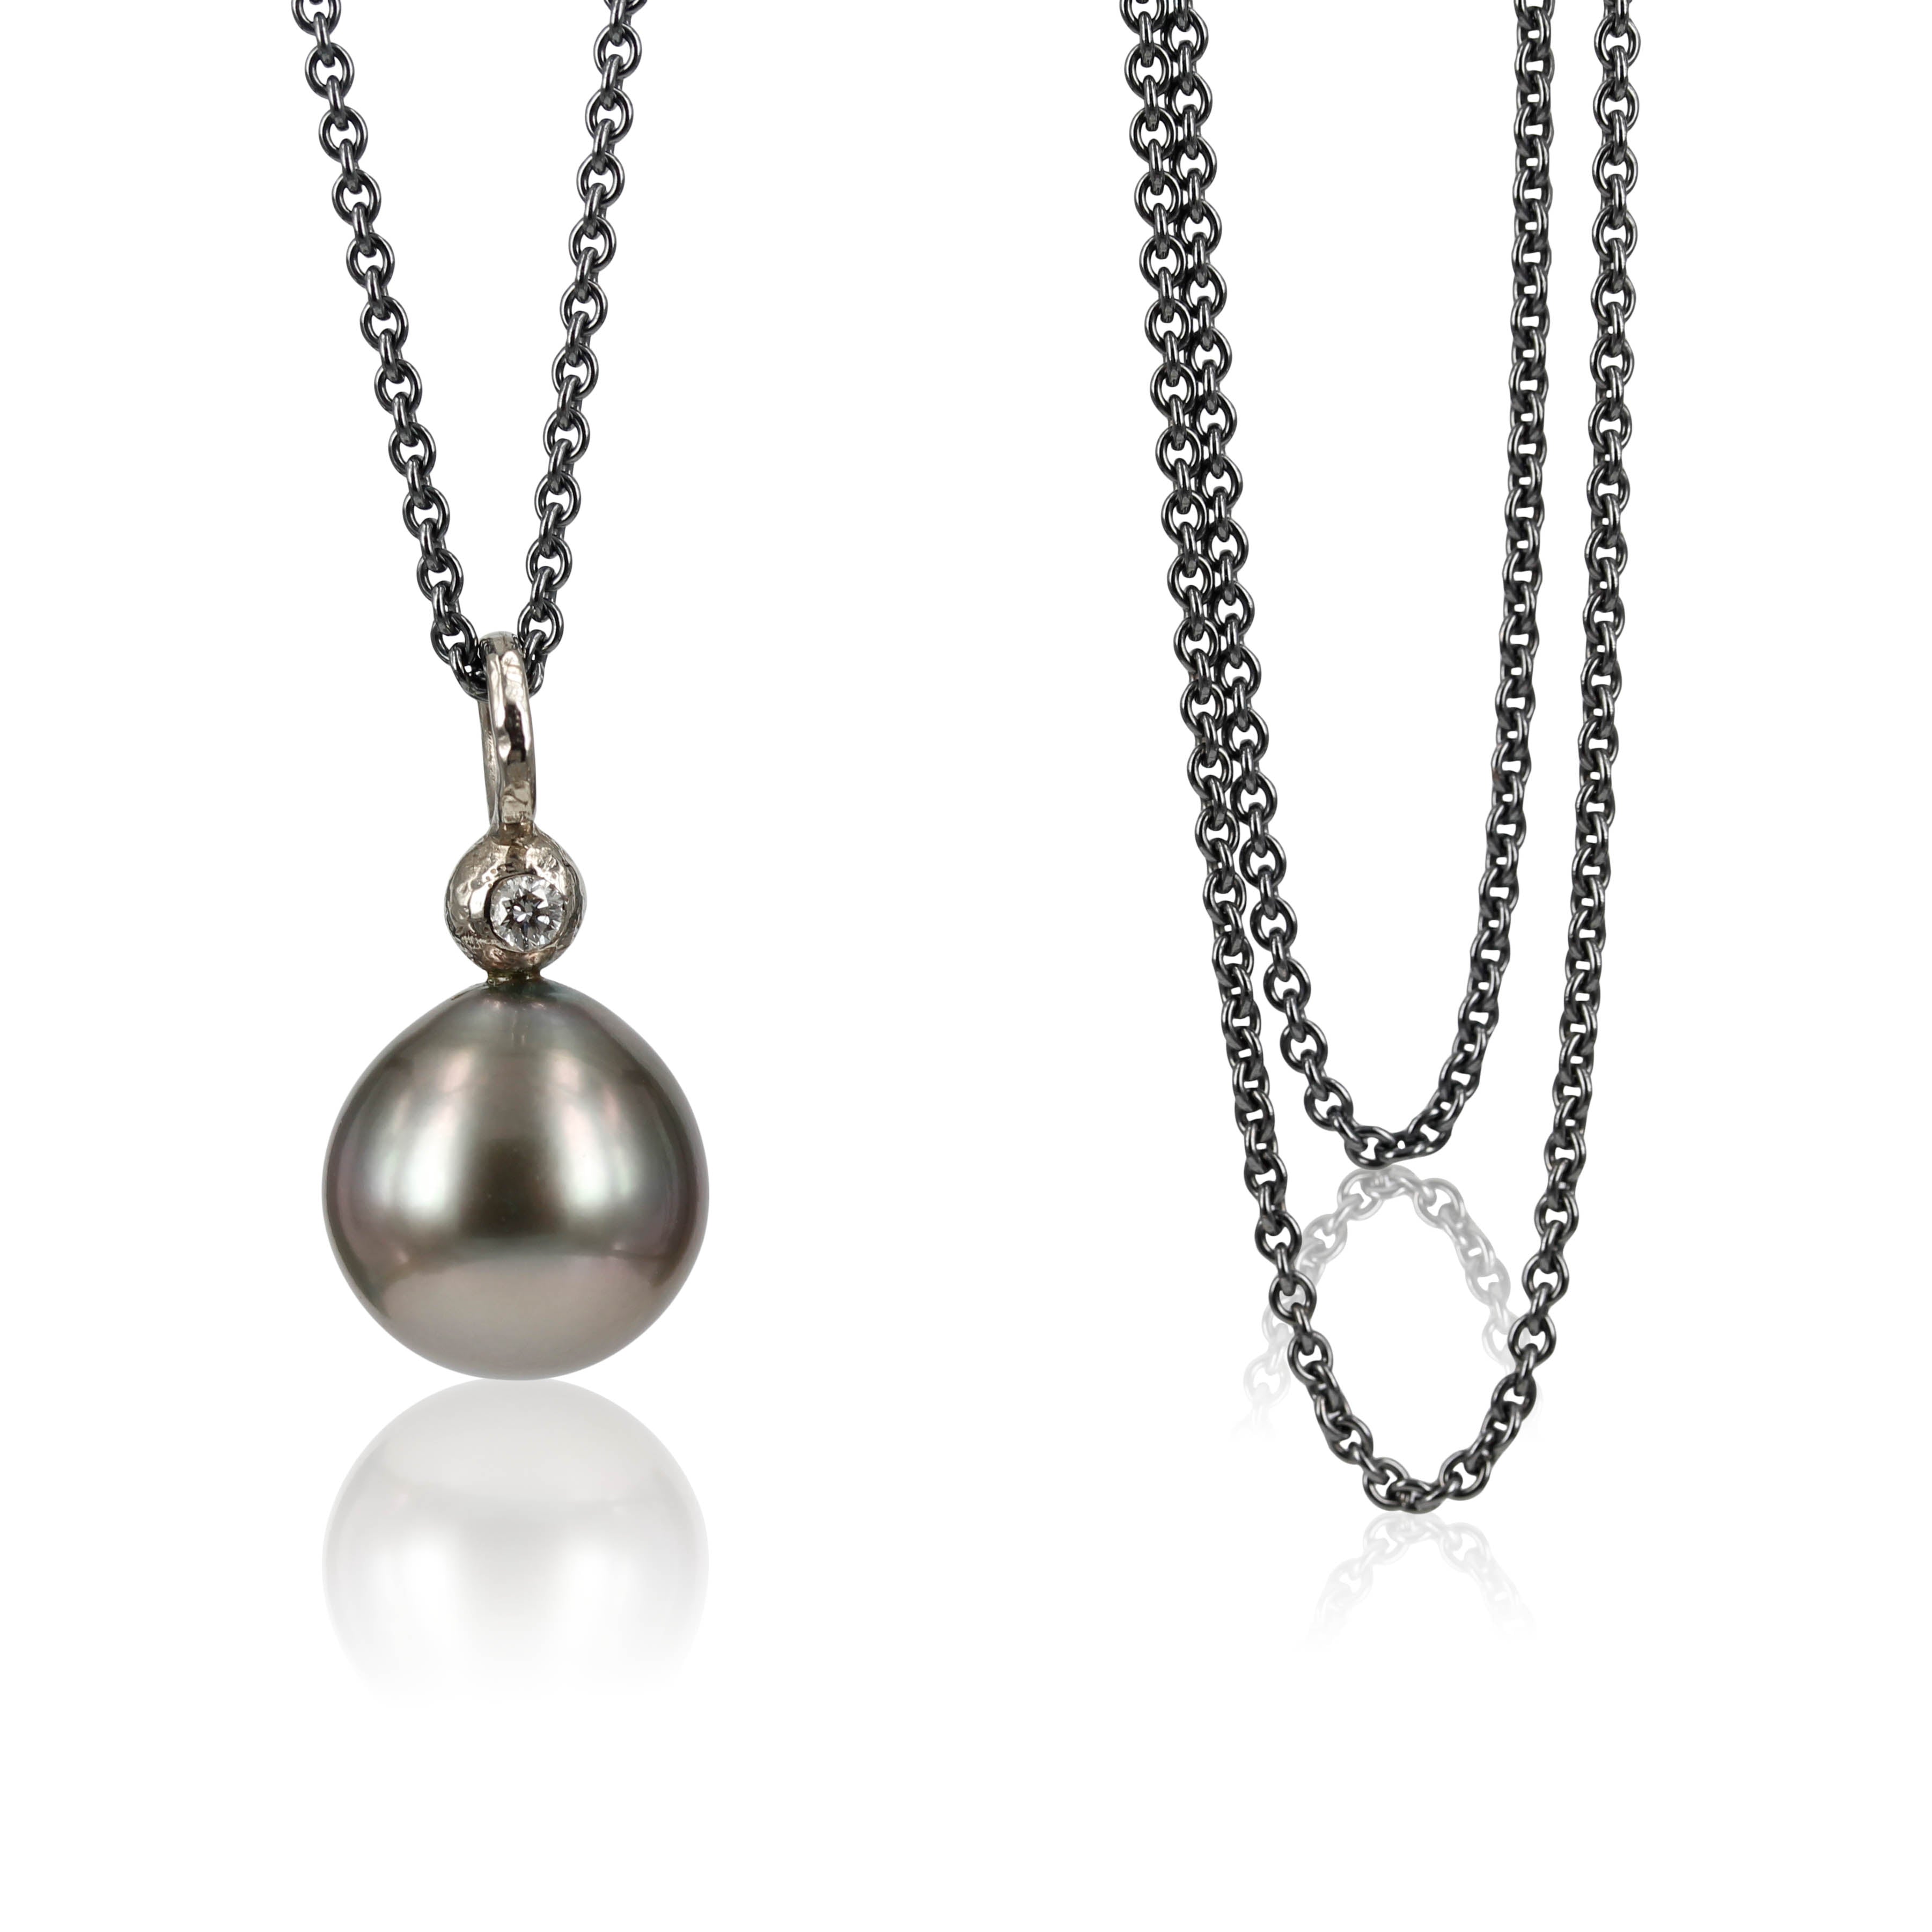 Den helt klassiske stil, enkel og elegant i udtrykket. Den smukke sølvgrå Tahiti perle, sammen med den fine 0,05 ct tw vvs brillant,  gør designer eksklusivt og elegant 